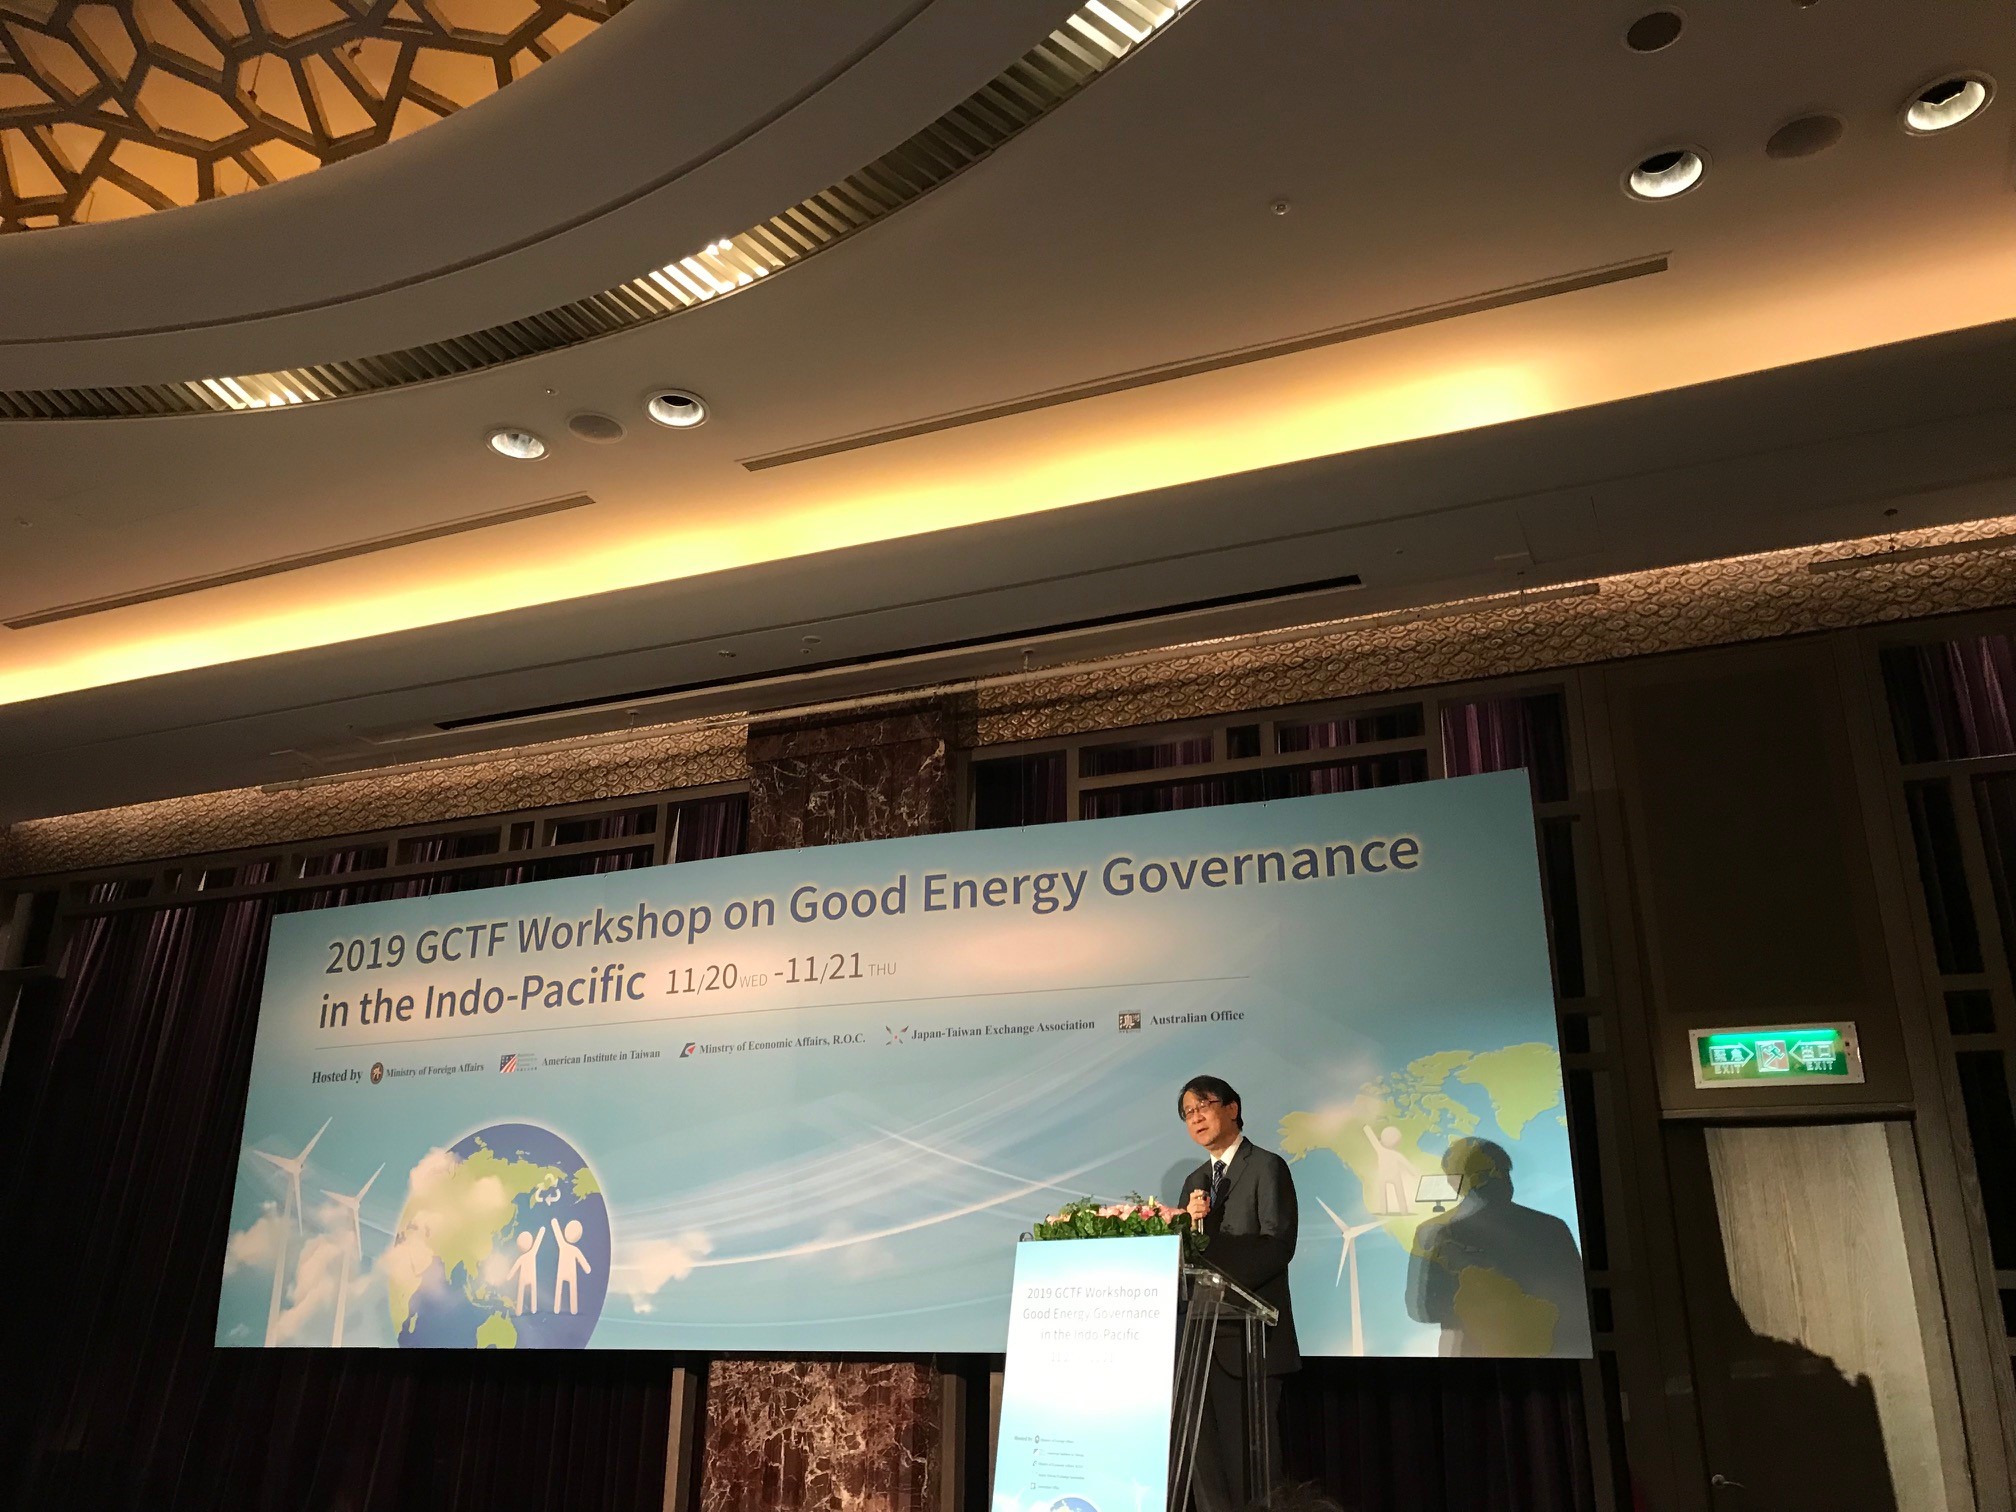 泉裕泰代表出席「全球合作暨訓練架構（GCTF）：印太區域良善能源治理研討會」開幕式